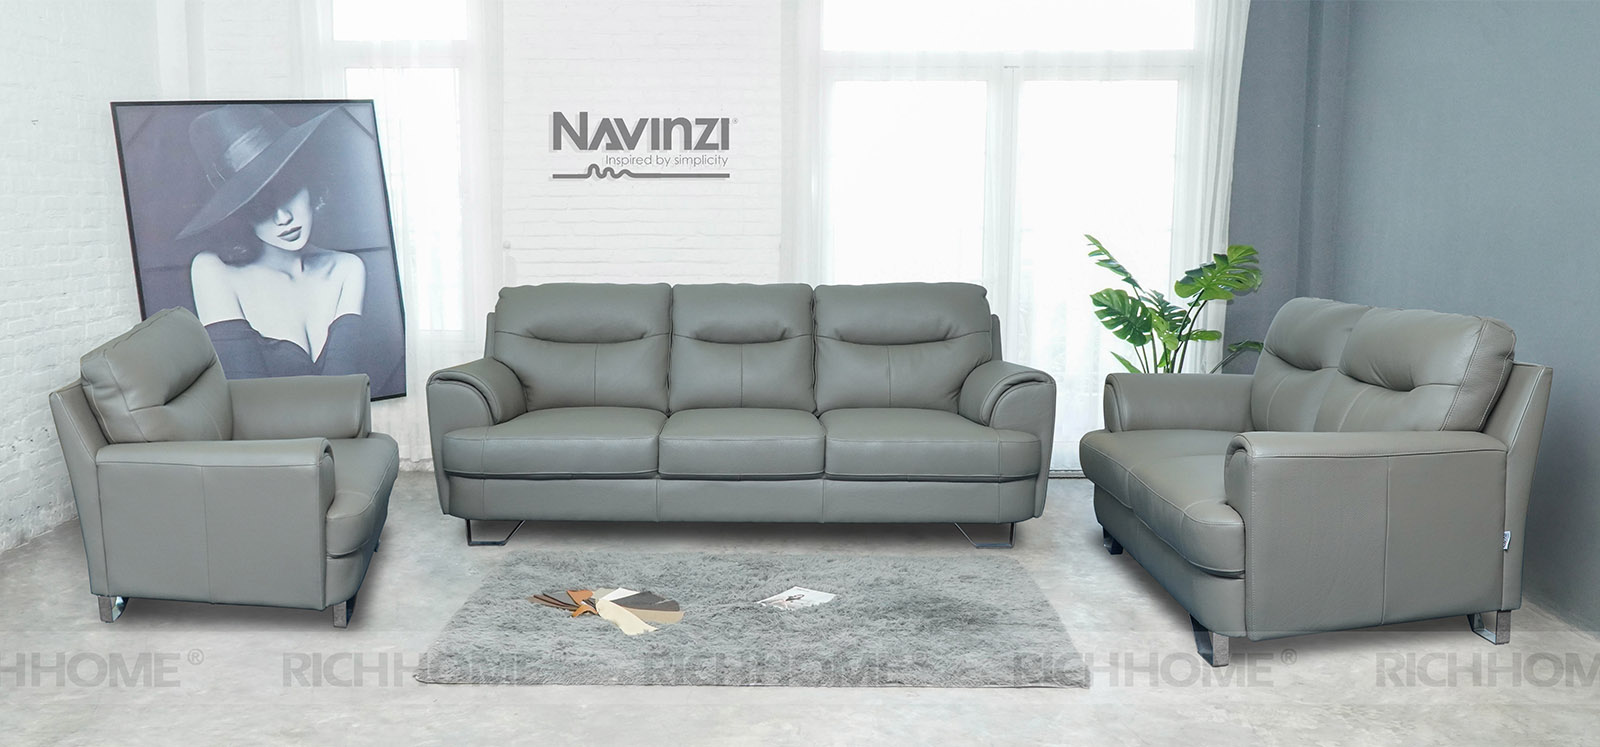 Tổng hợp các mẫu sofa nhập khẩu với nhiều kiểu dáng khác nhau - Ảnh 4